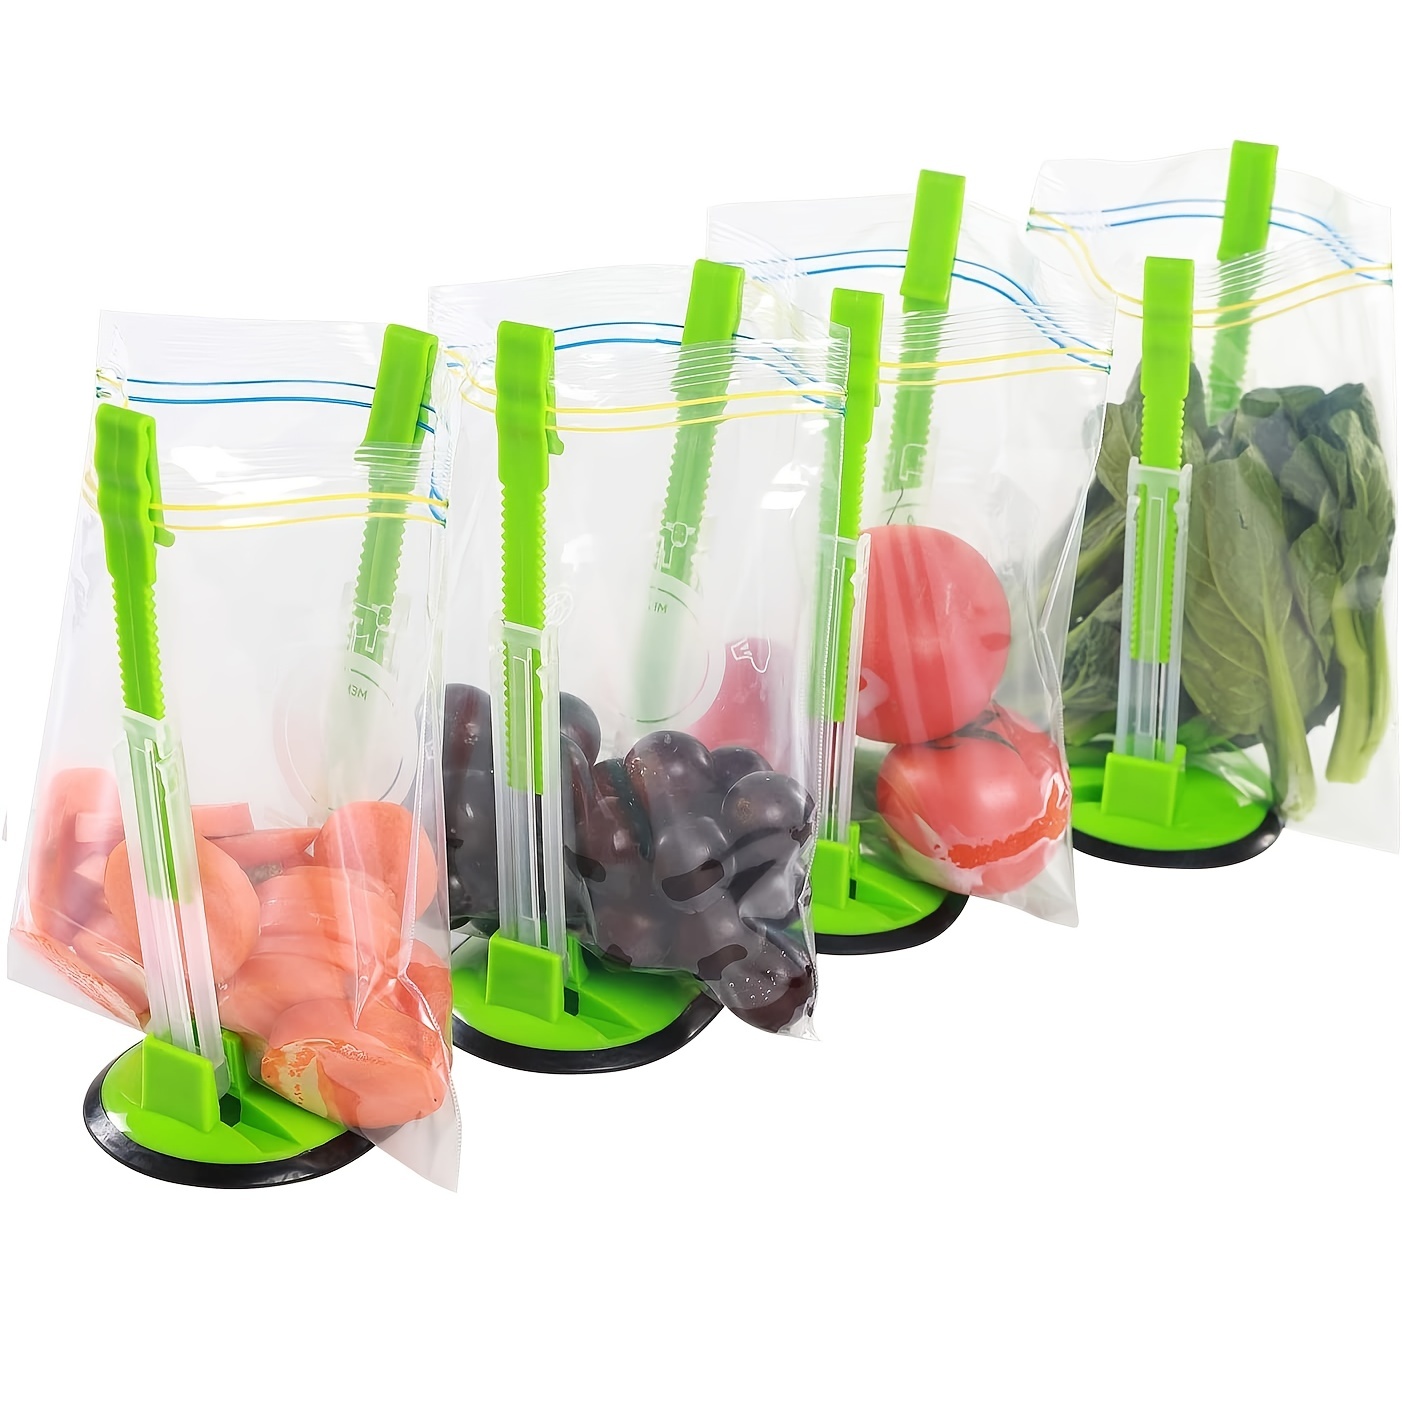 1pc Baggy Rack Holder For Food Prep Bag/Plastic Freezer Bag/Ziplock Bag  Holder Stand, Meal Planning/ Prep Bag Holders